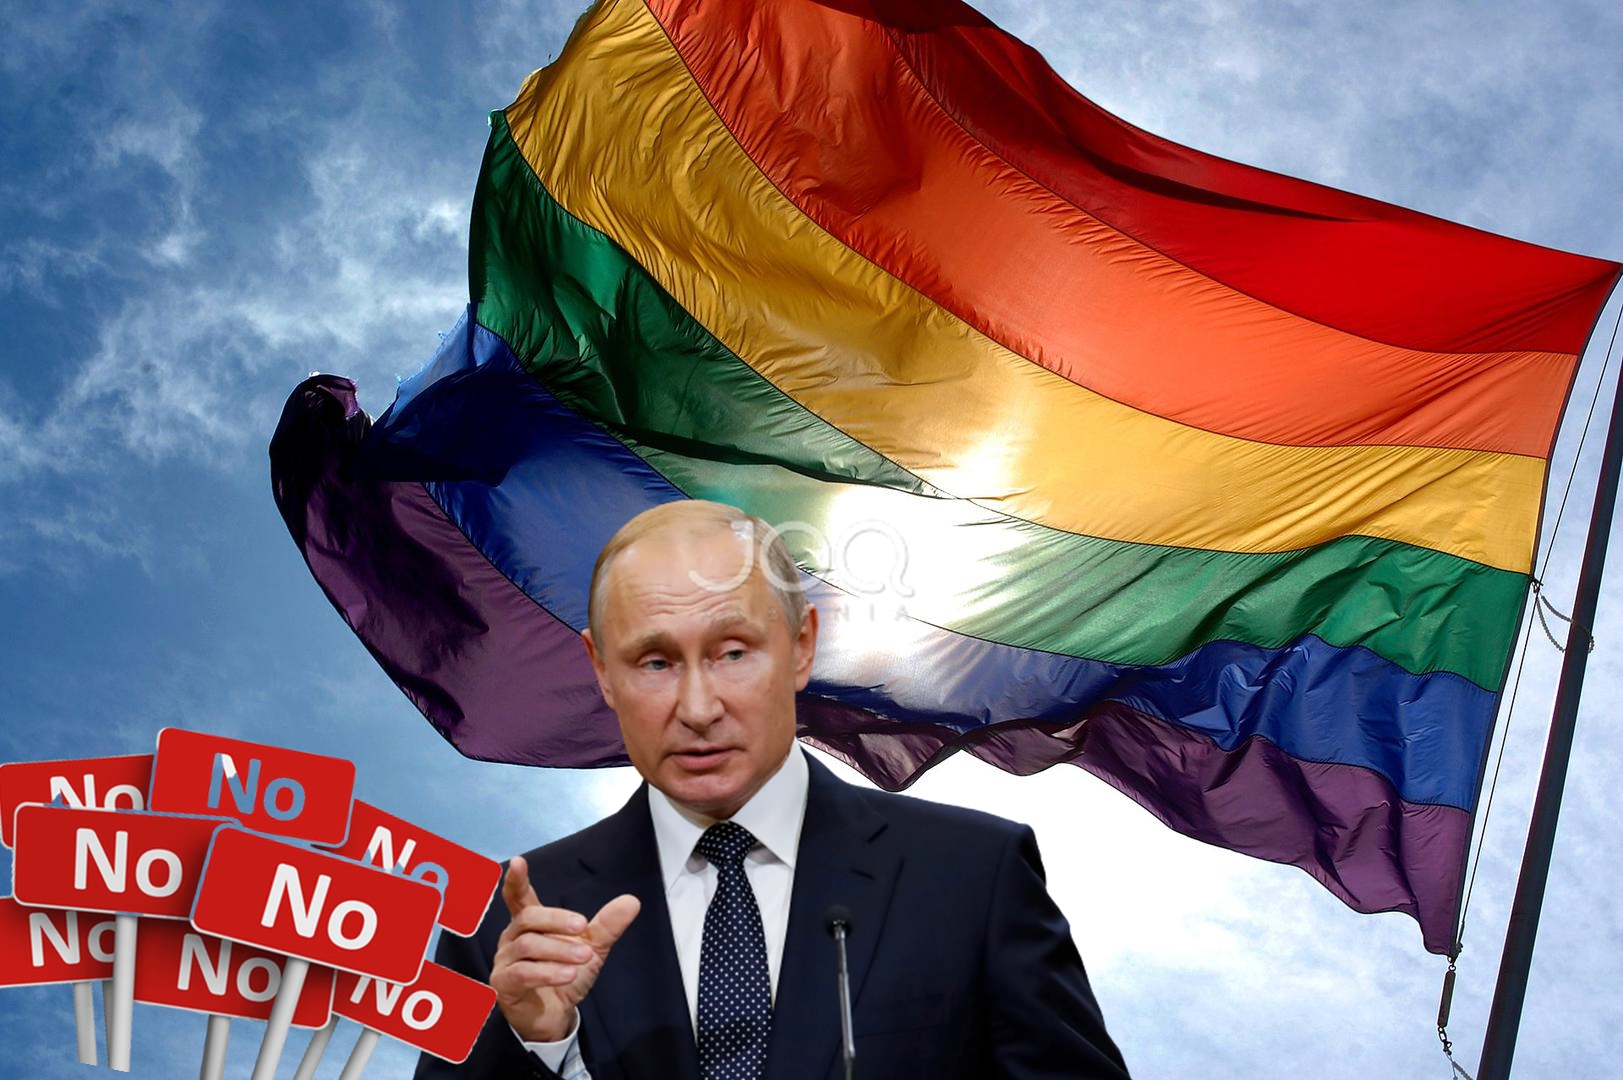 Putin i prerë: Ndalohet martesa e gjinisë së njëjtë dhe birësimet transgjinore